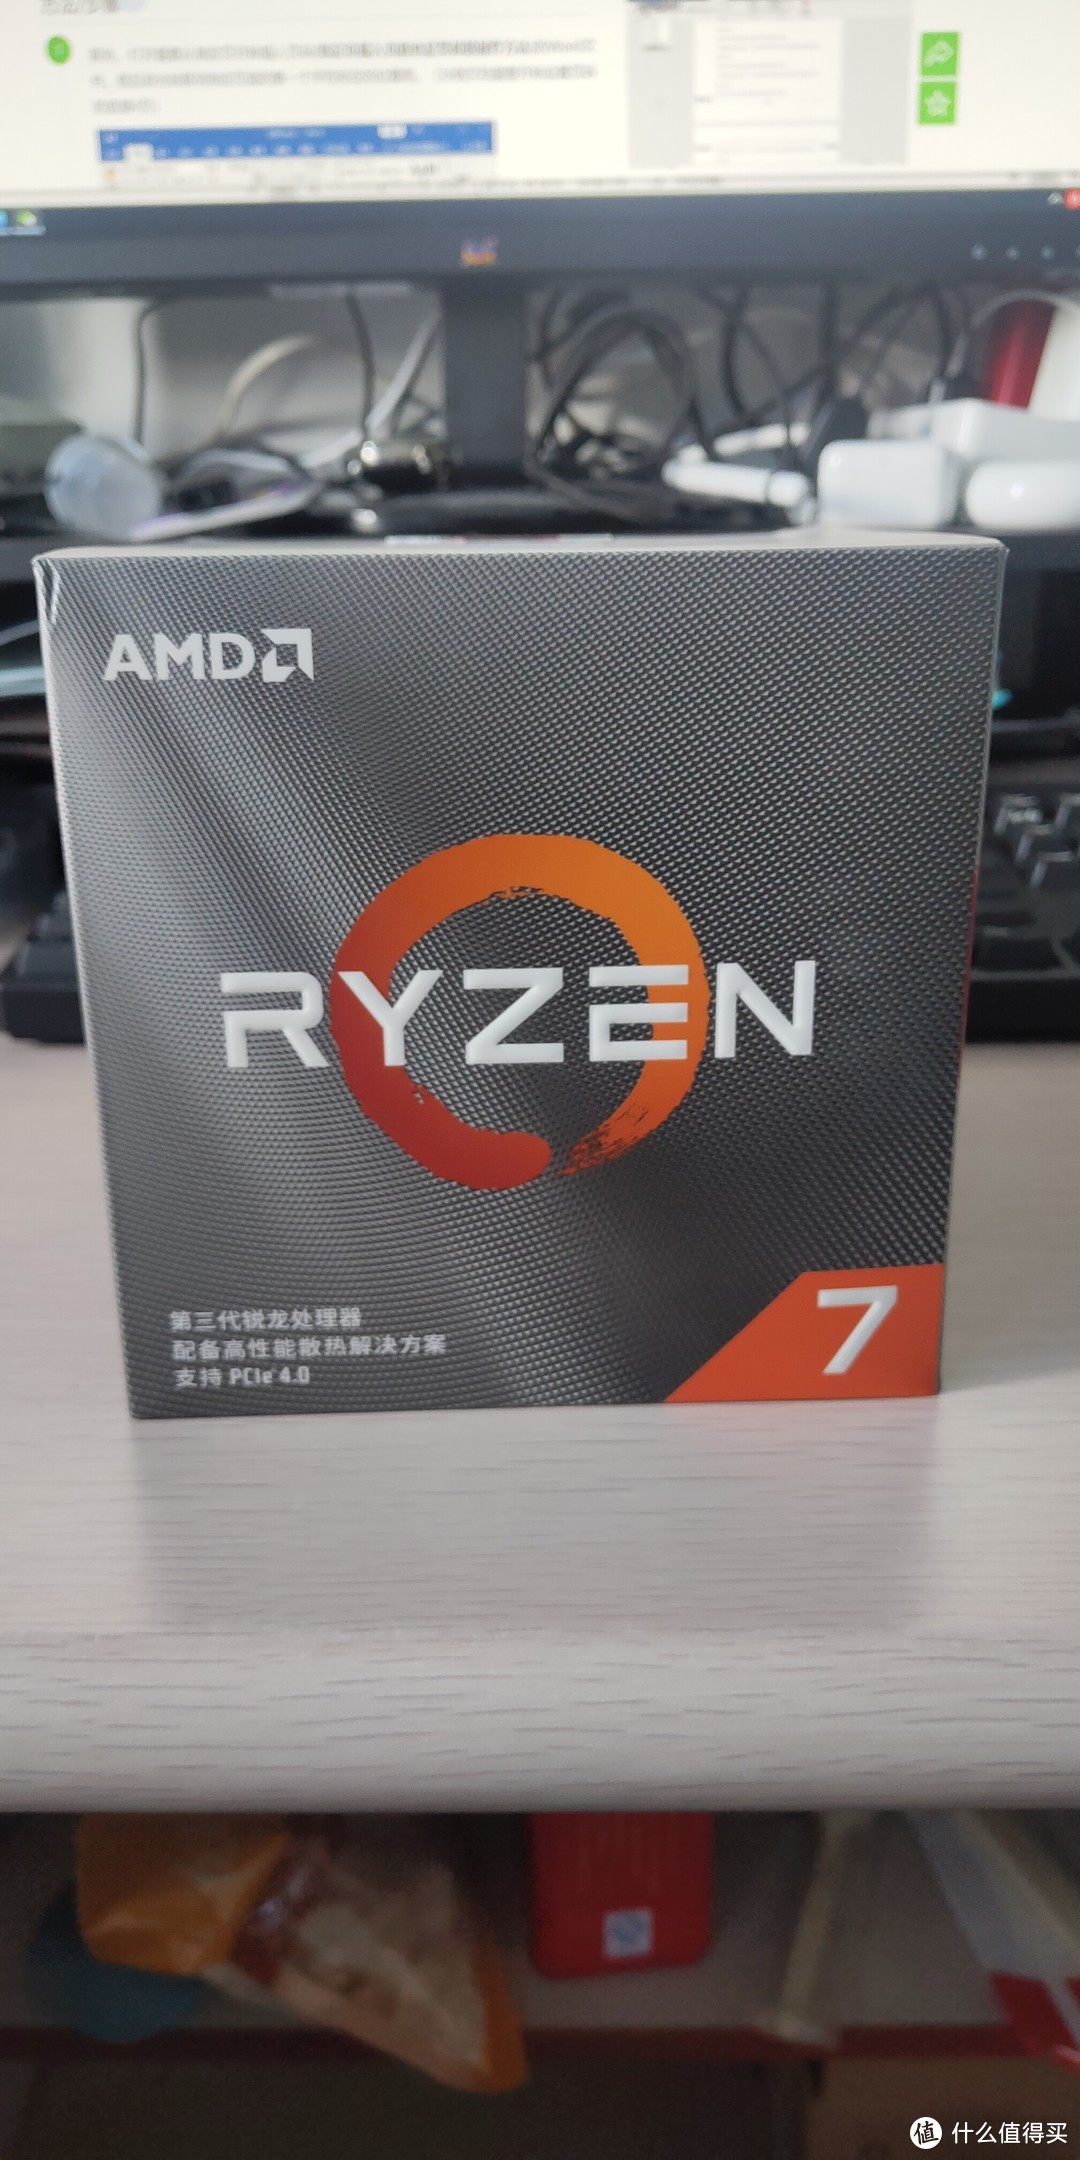 AMD YES!